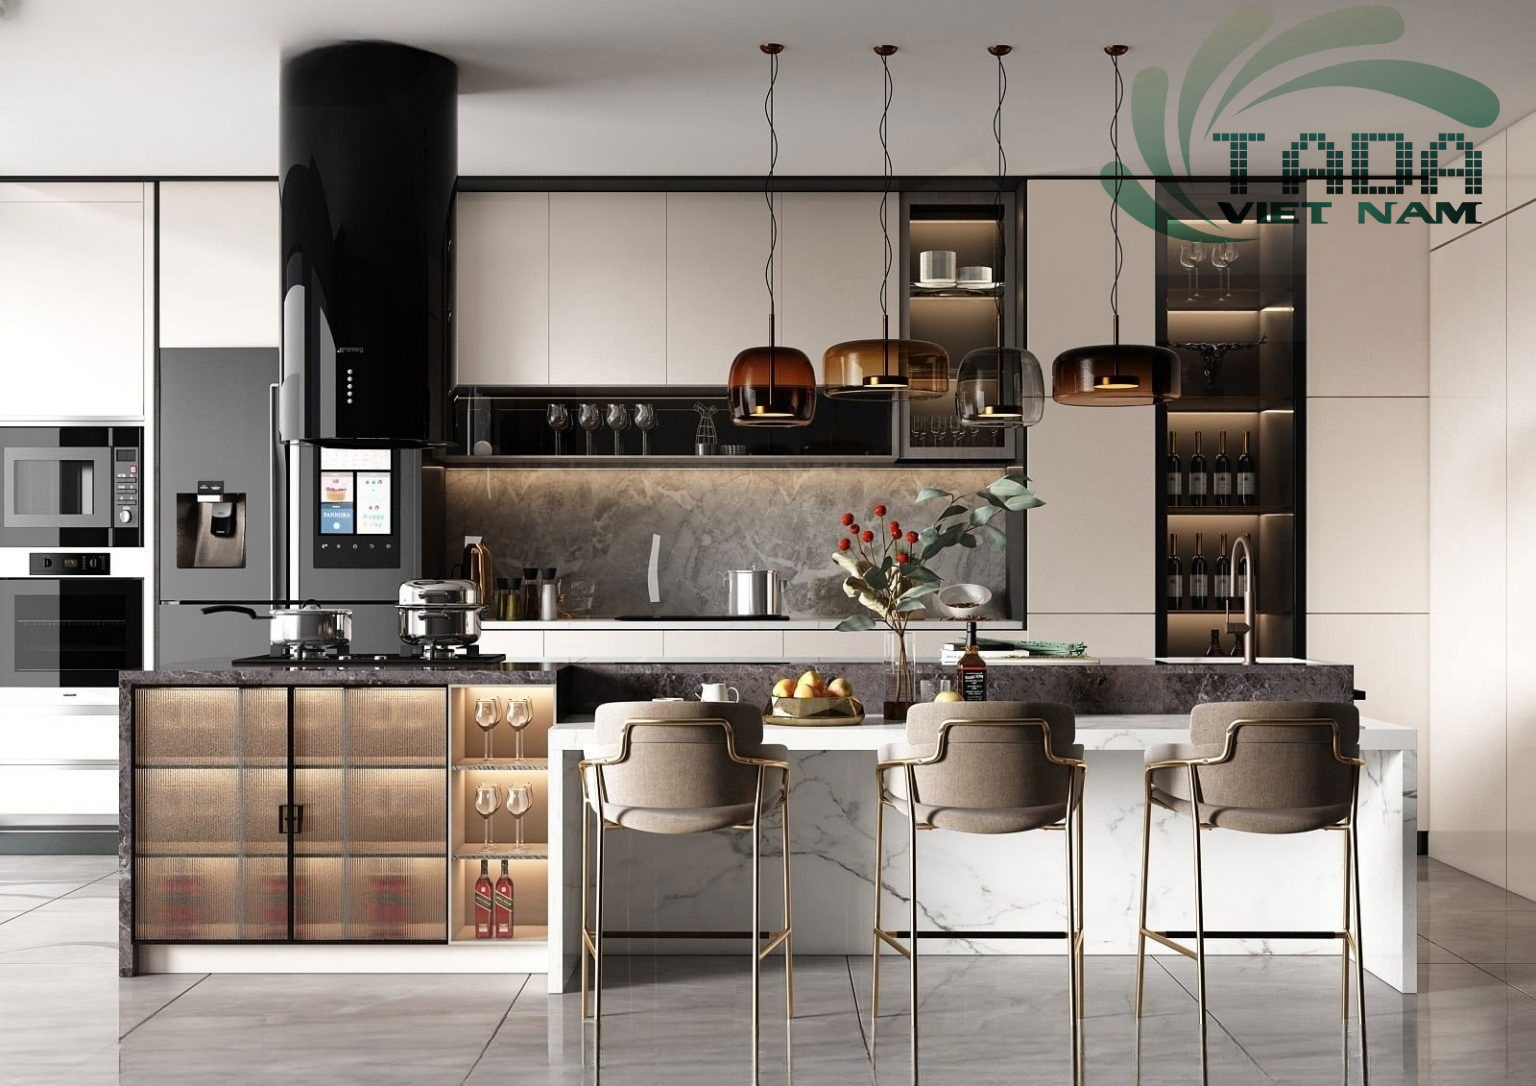 Tủ bếp kết hợp với tủ rượu thiết kế độc đáo tôn lên vẻ đẹp của căn bếp, thương hiệu TADA Việt Nam - TD3032